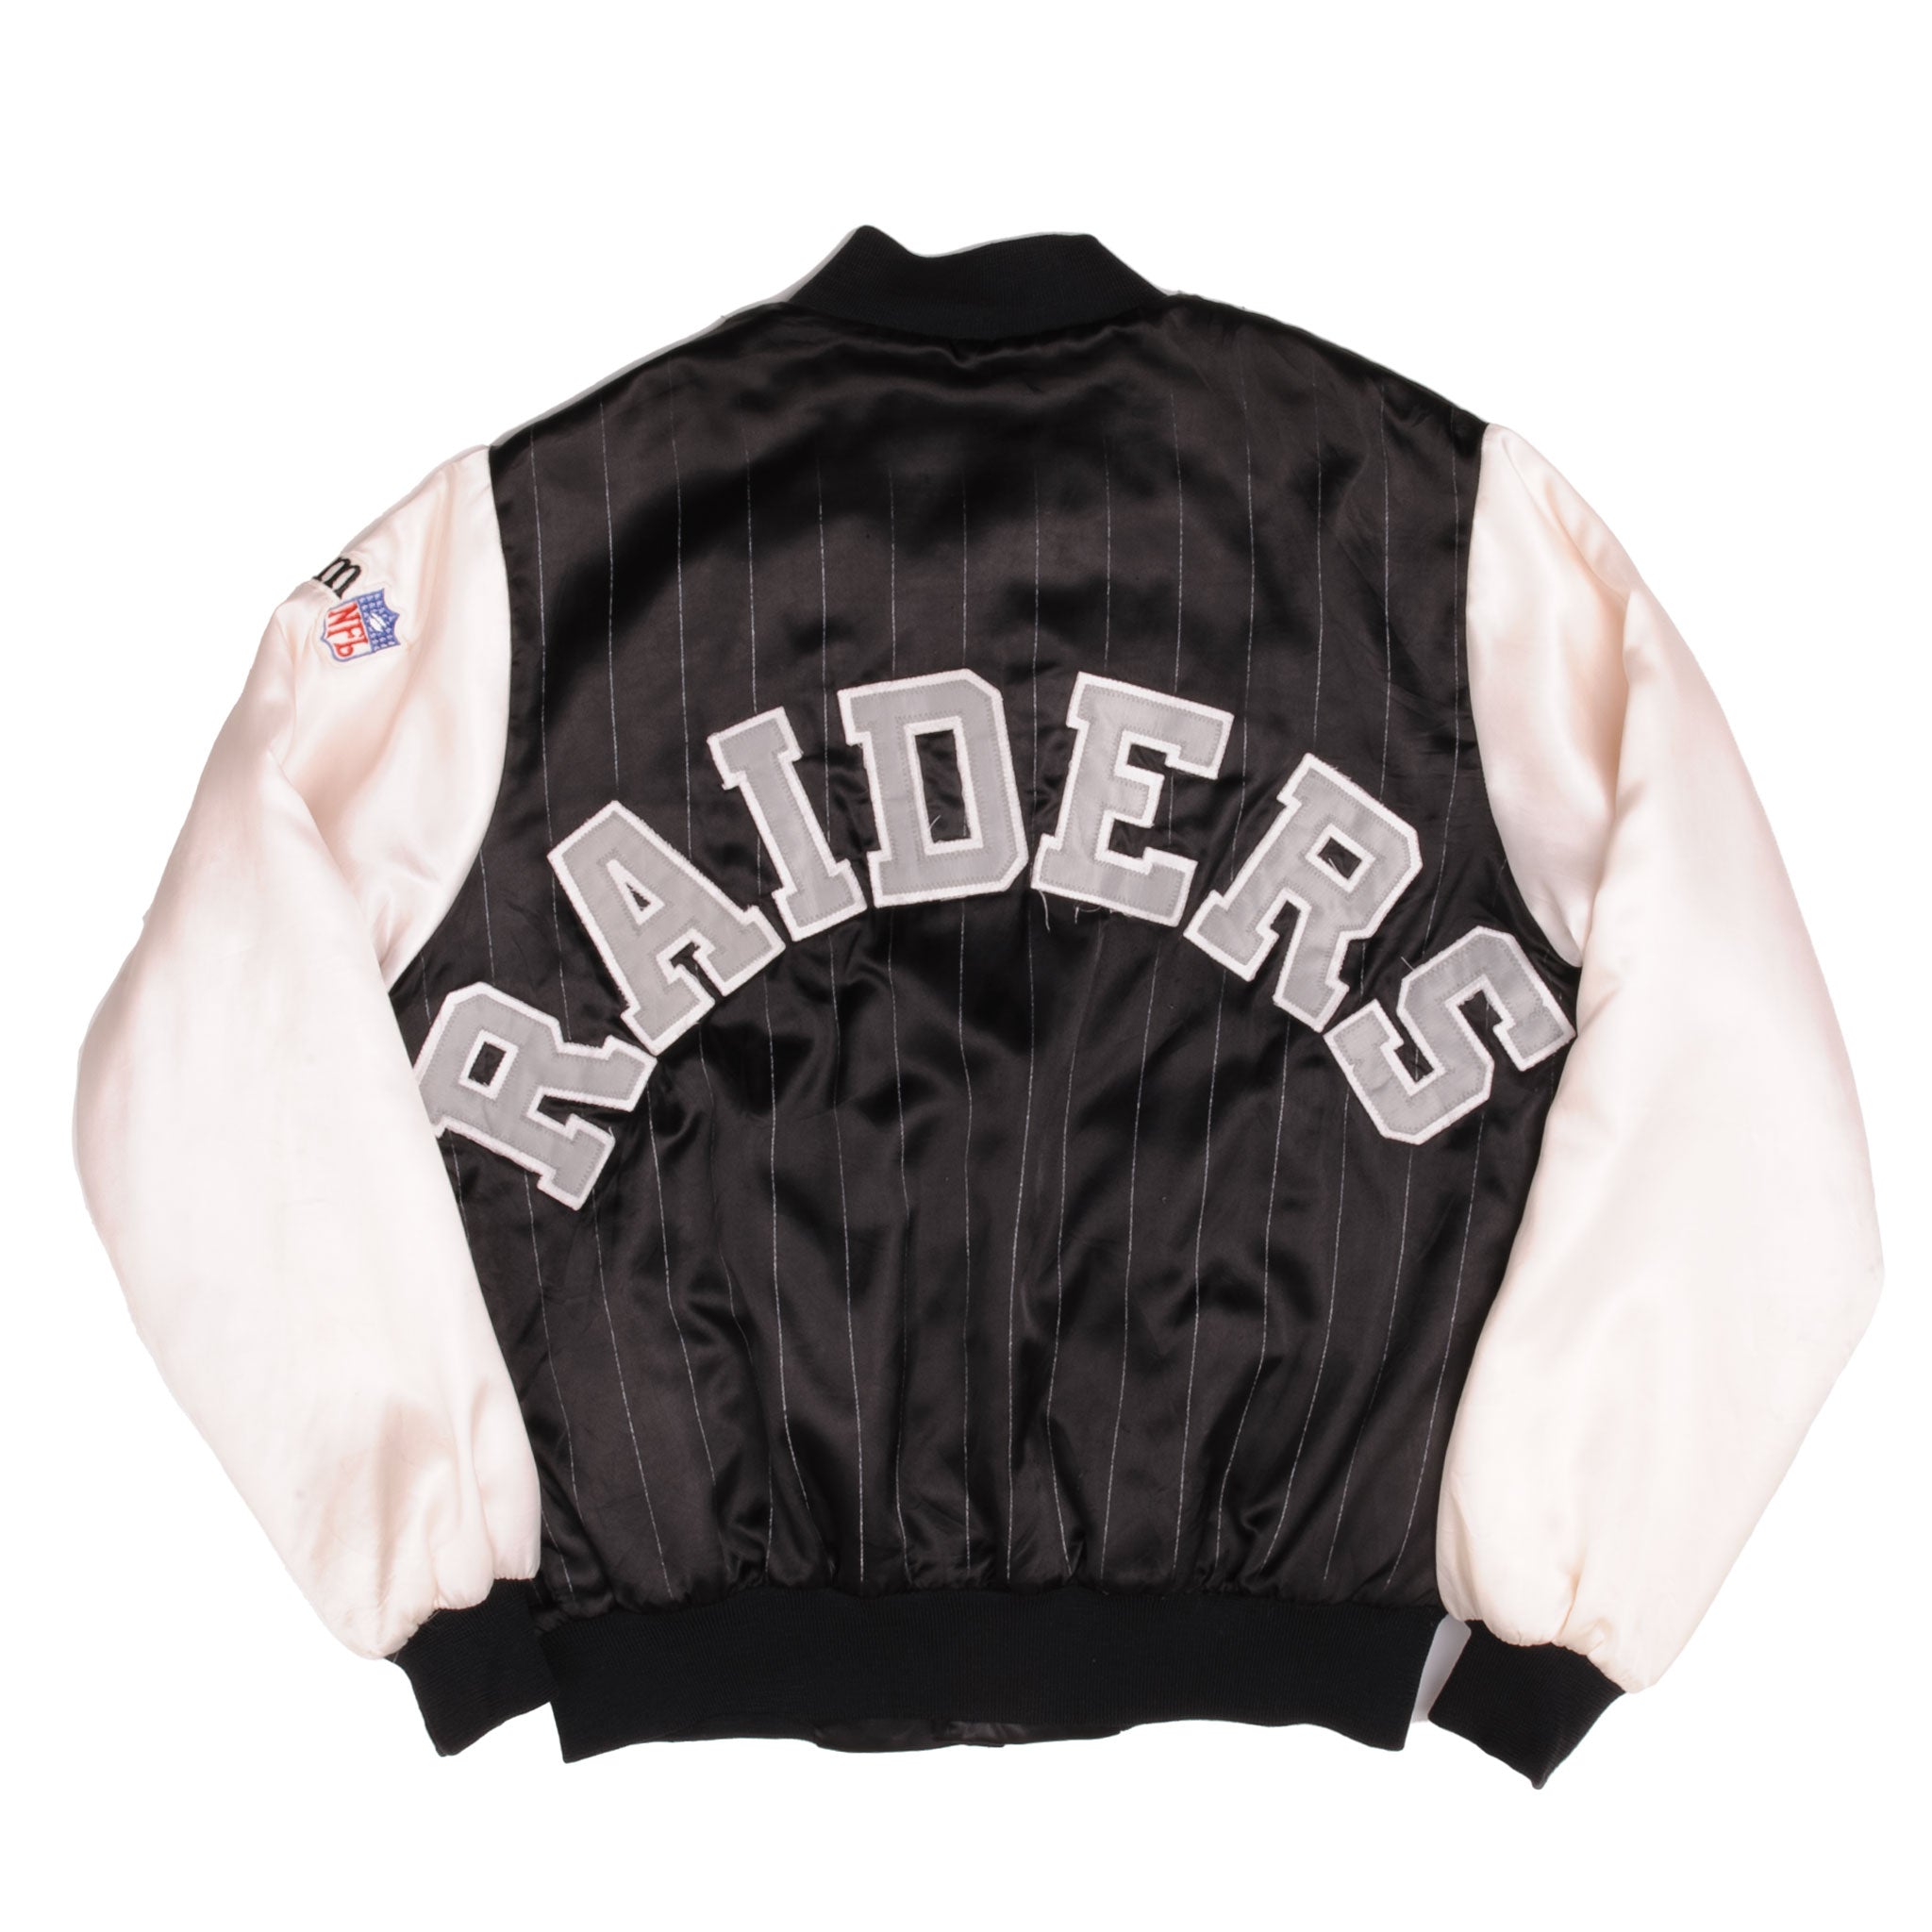 Vintage Oakland Raiders Bomber Jacket Made Usa Size Xtra Large 